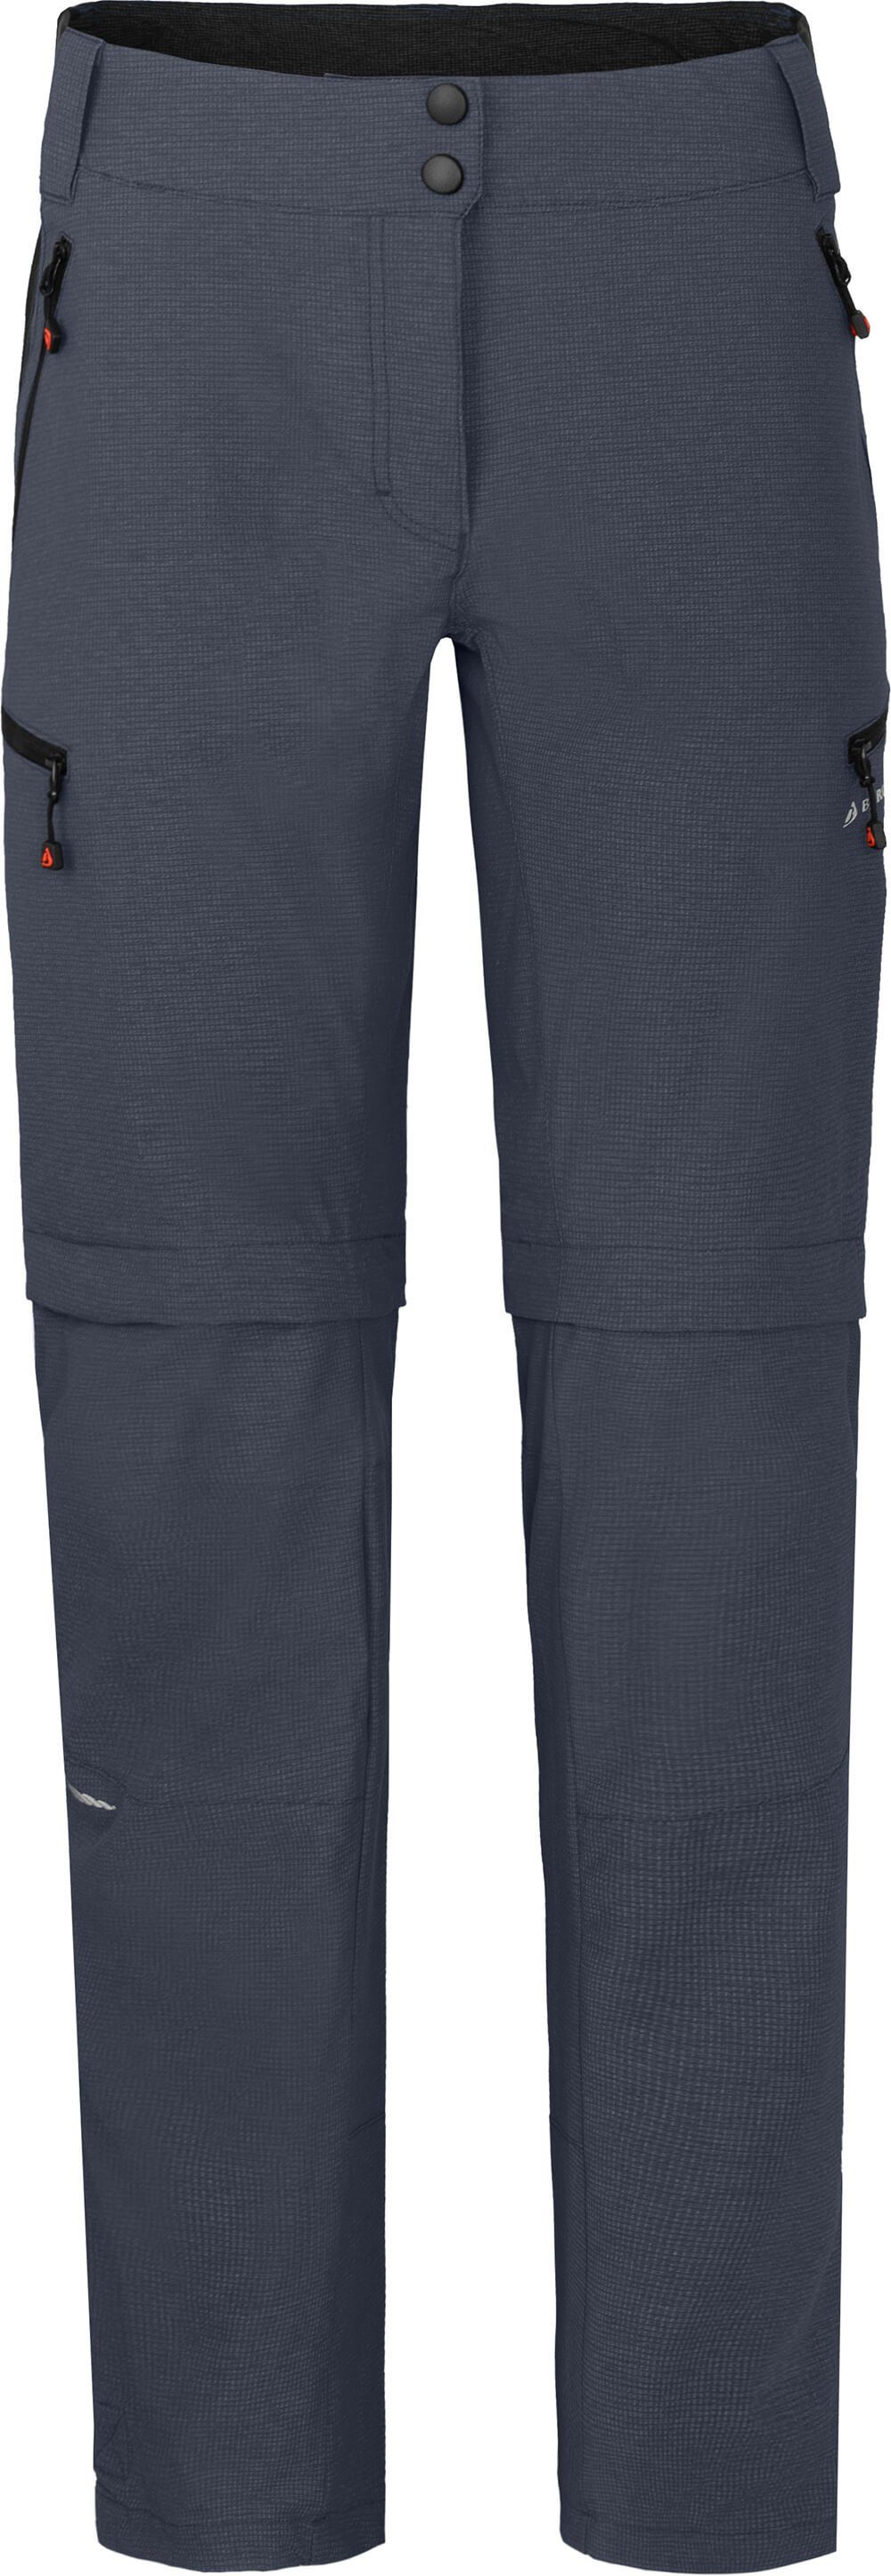 Bergson Zip-off-Hose VALLI zip-off Damen Radhose, robust elastisch, Normalgrößen, grau/blau